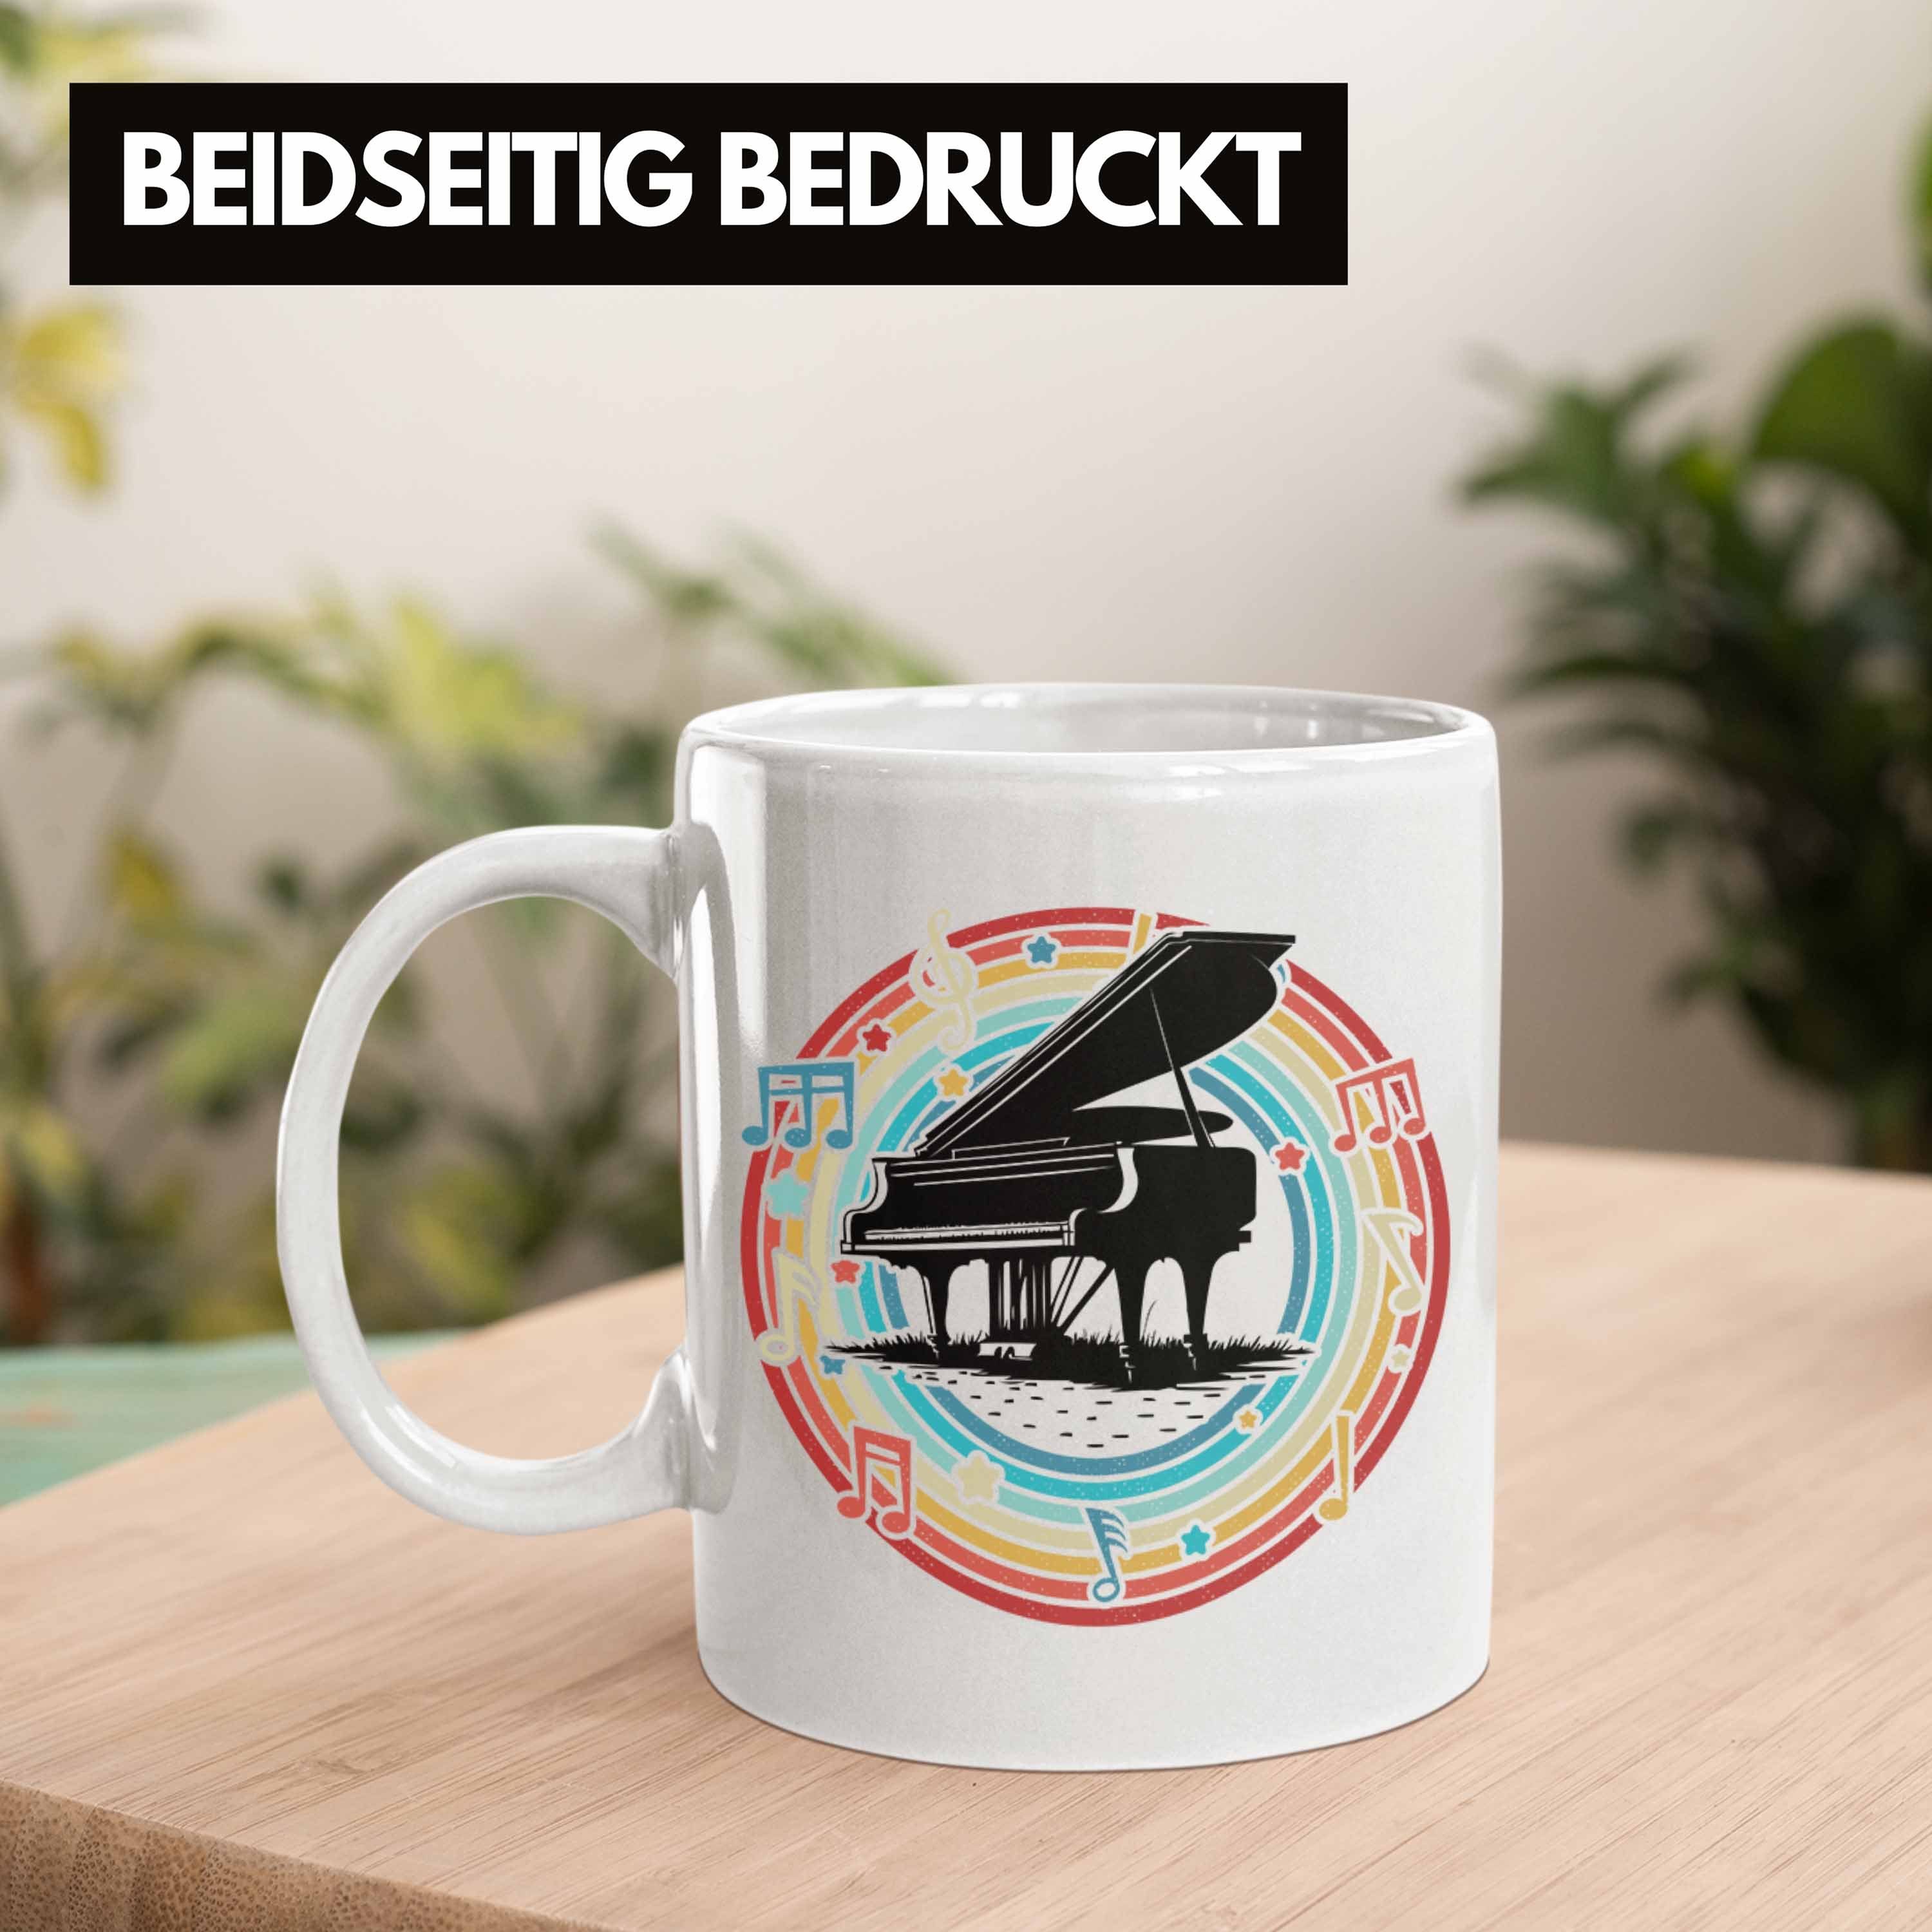 Piano-Spieler Kaffee-Becher Flügel Trendation Geschenk Weiss Tasse Tasse Geschenkidee Klavier